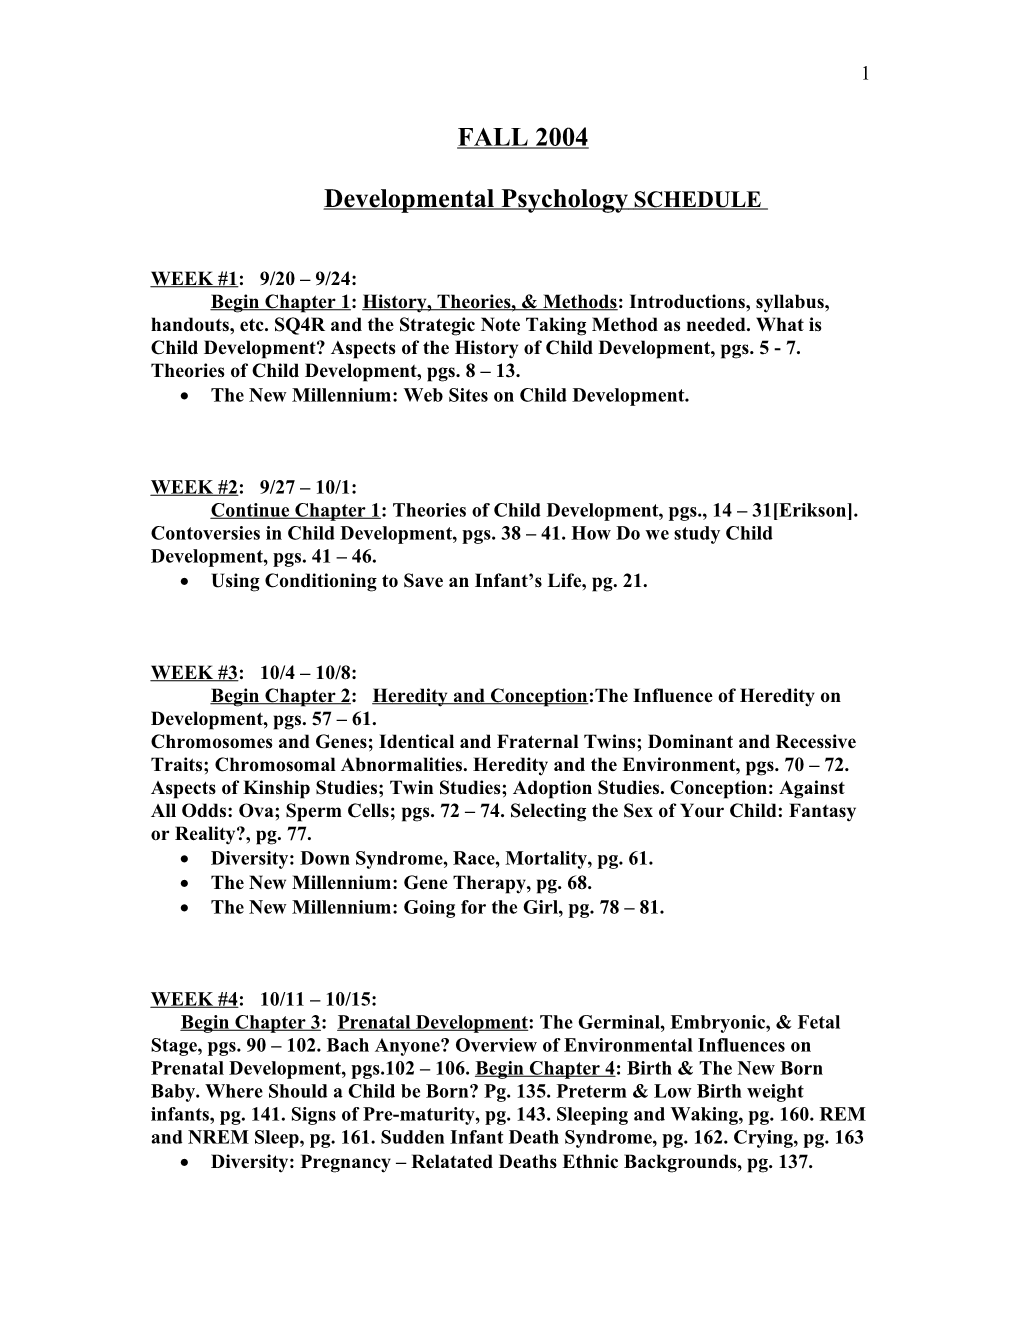 Developmental Psychology SCHEDULE